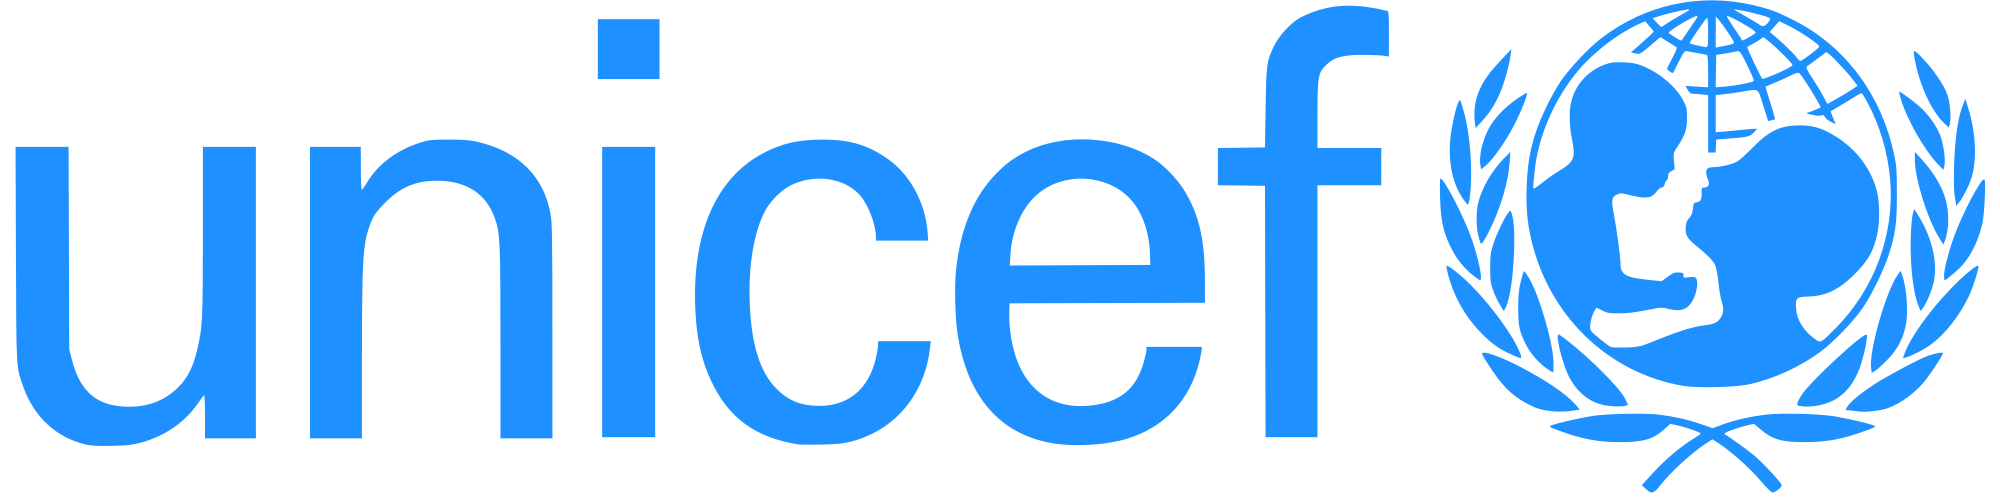 UNICEF-logo-1